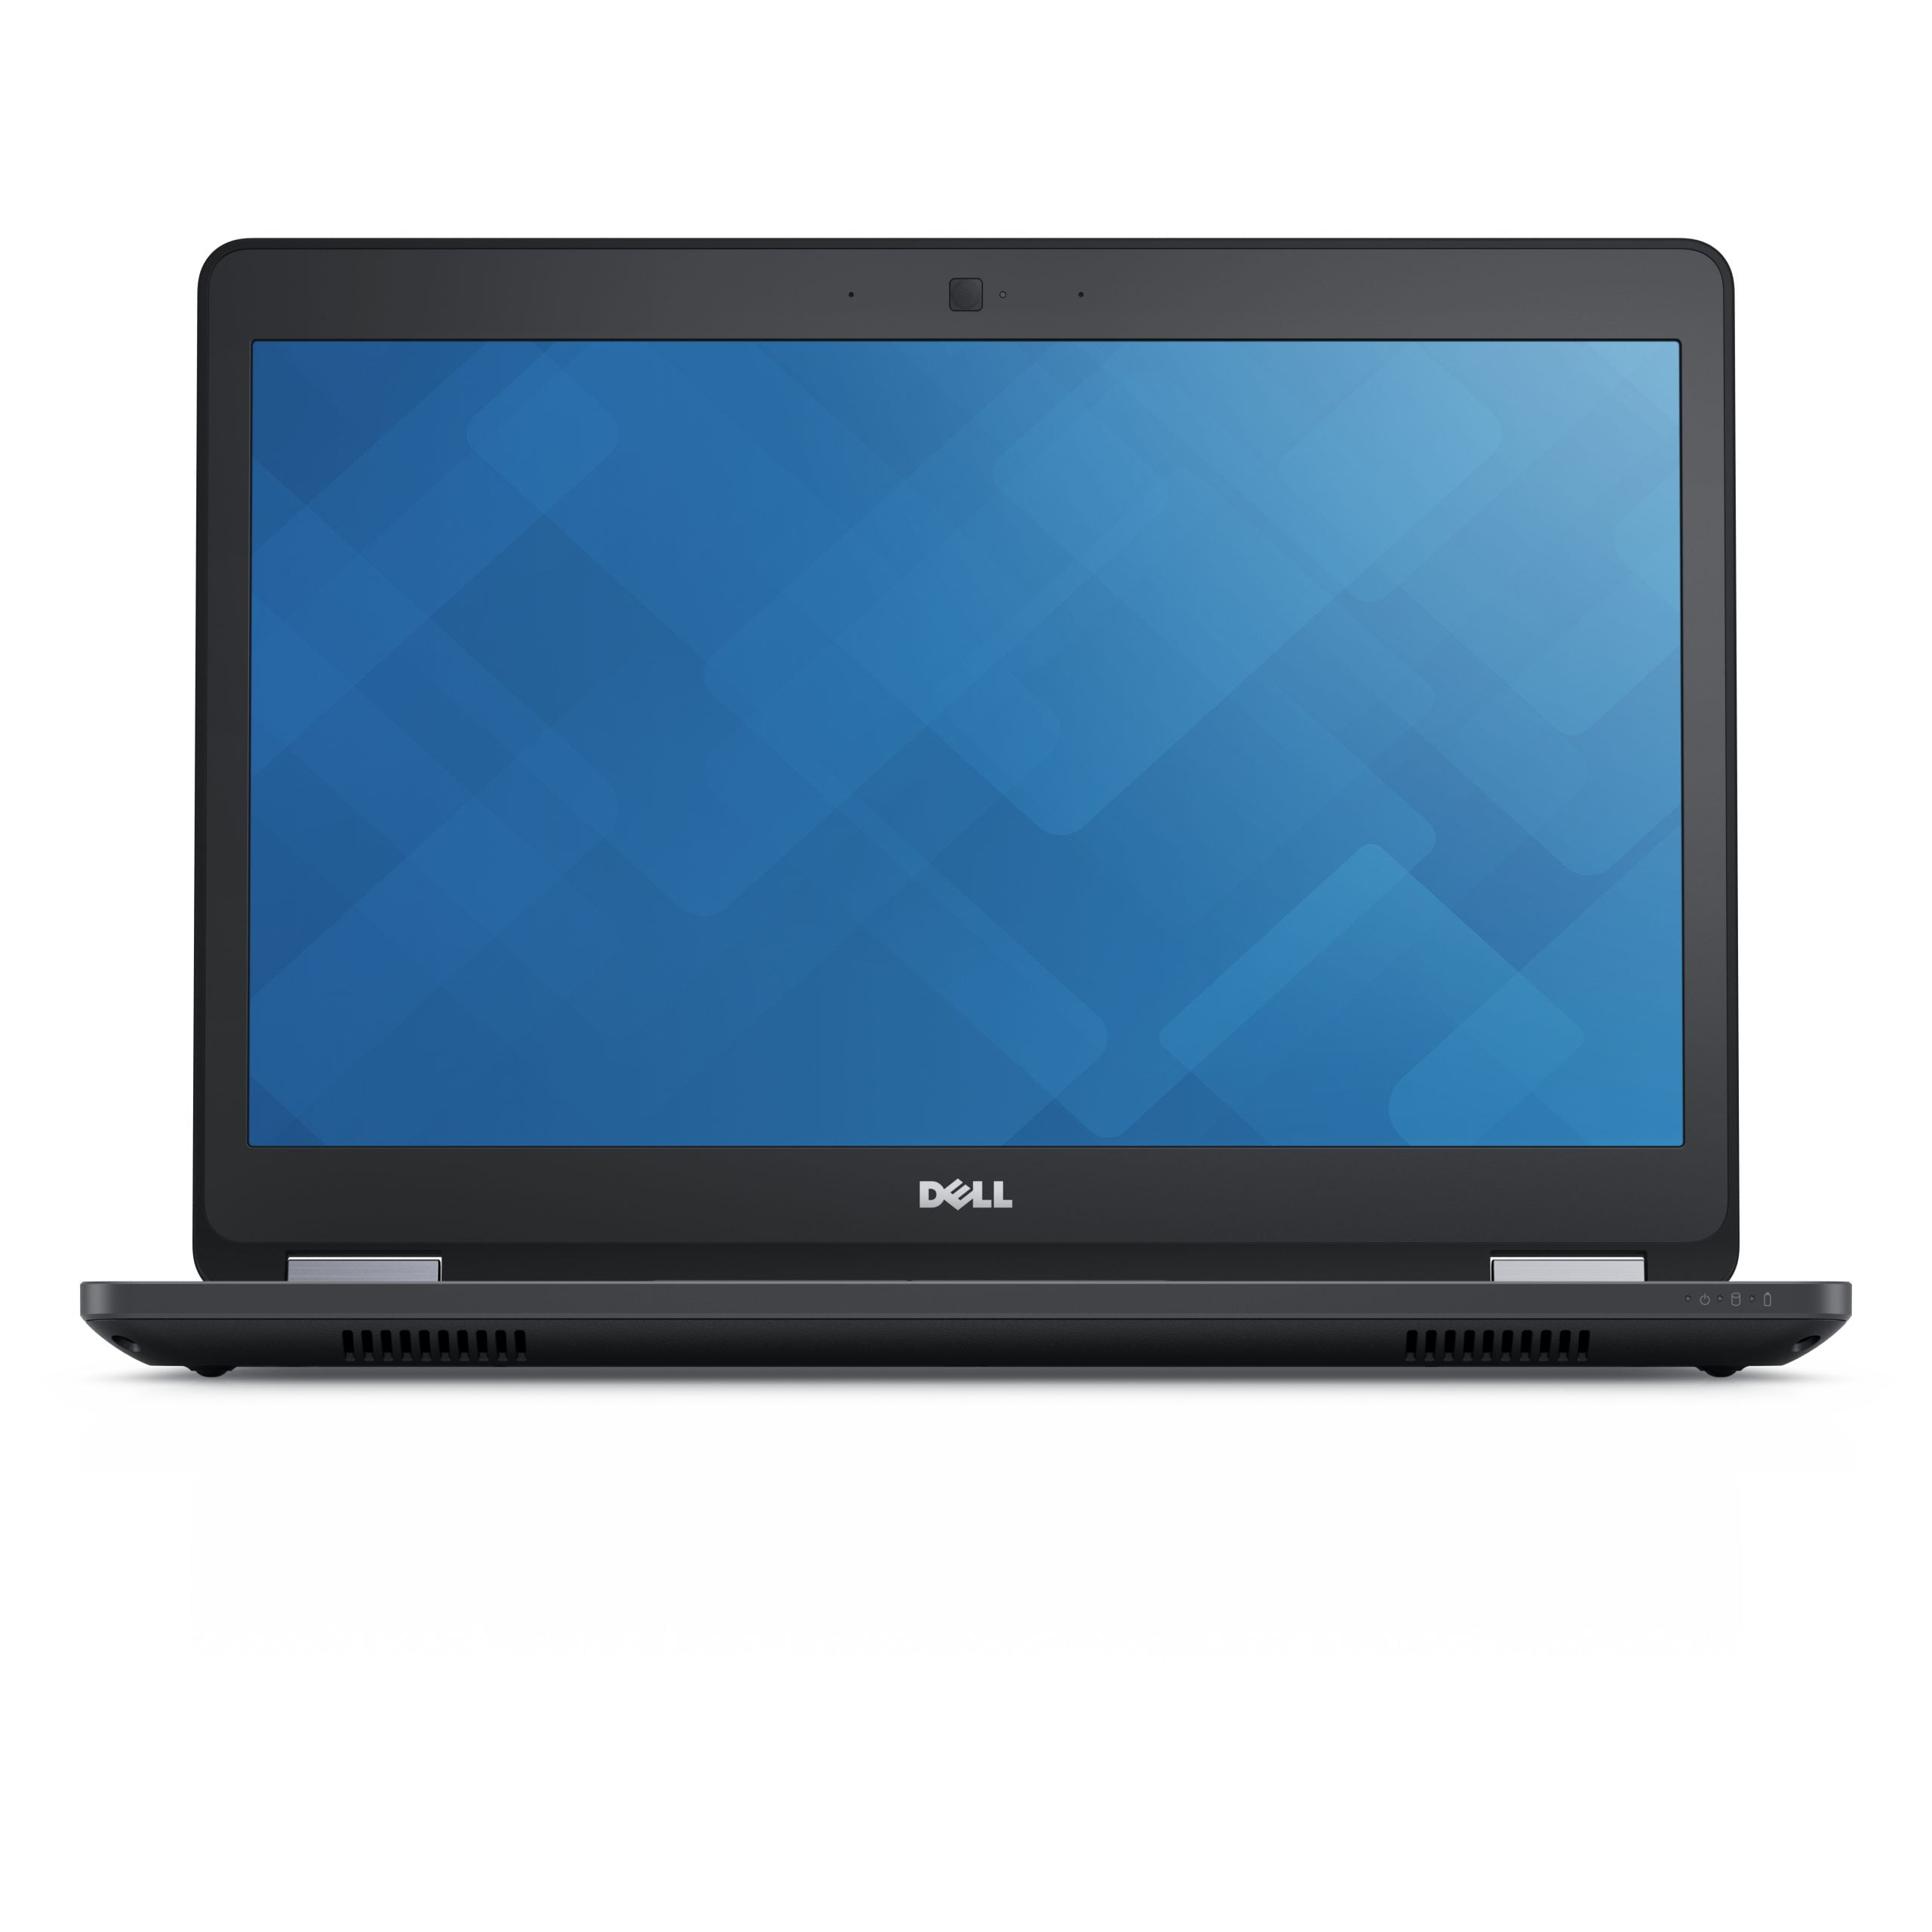 Dell Latitude E5470 (Refurbished) Notebook 35.6 cm (14